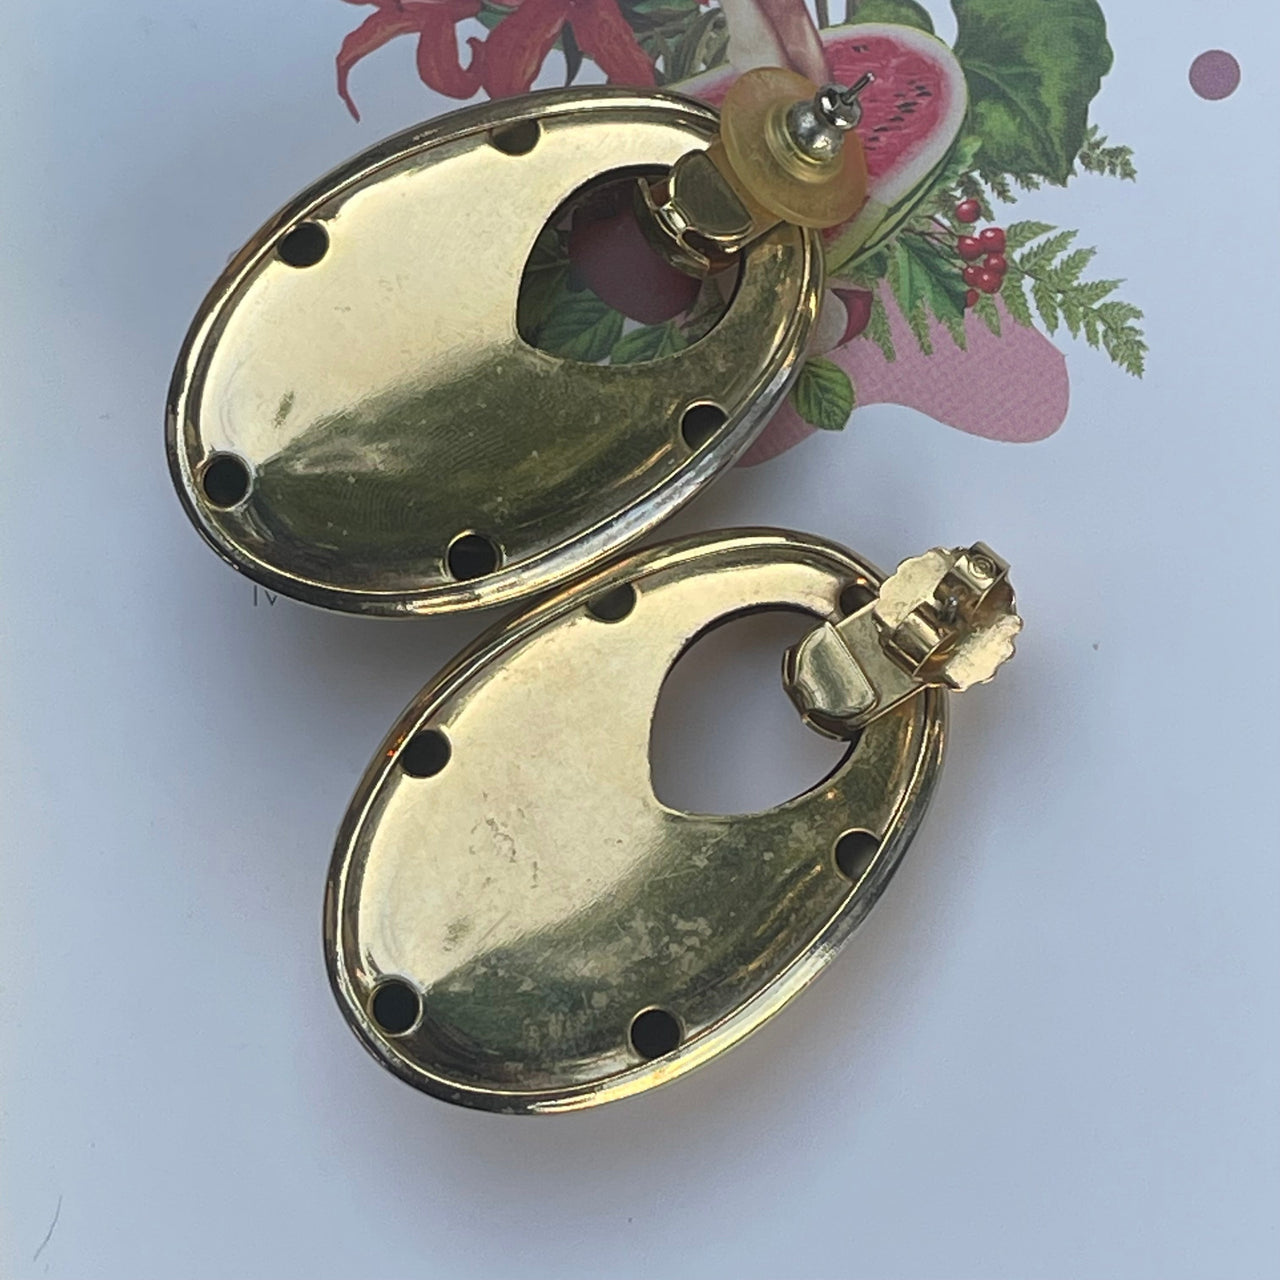 Gold Doorknocker Earrings Jewelry Bloomers and Frocks 